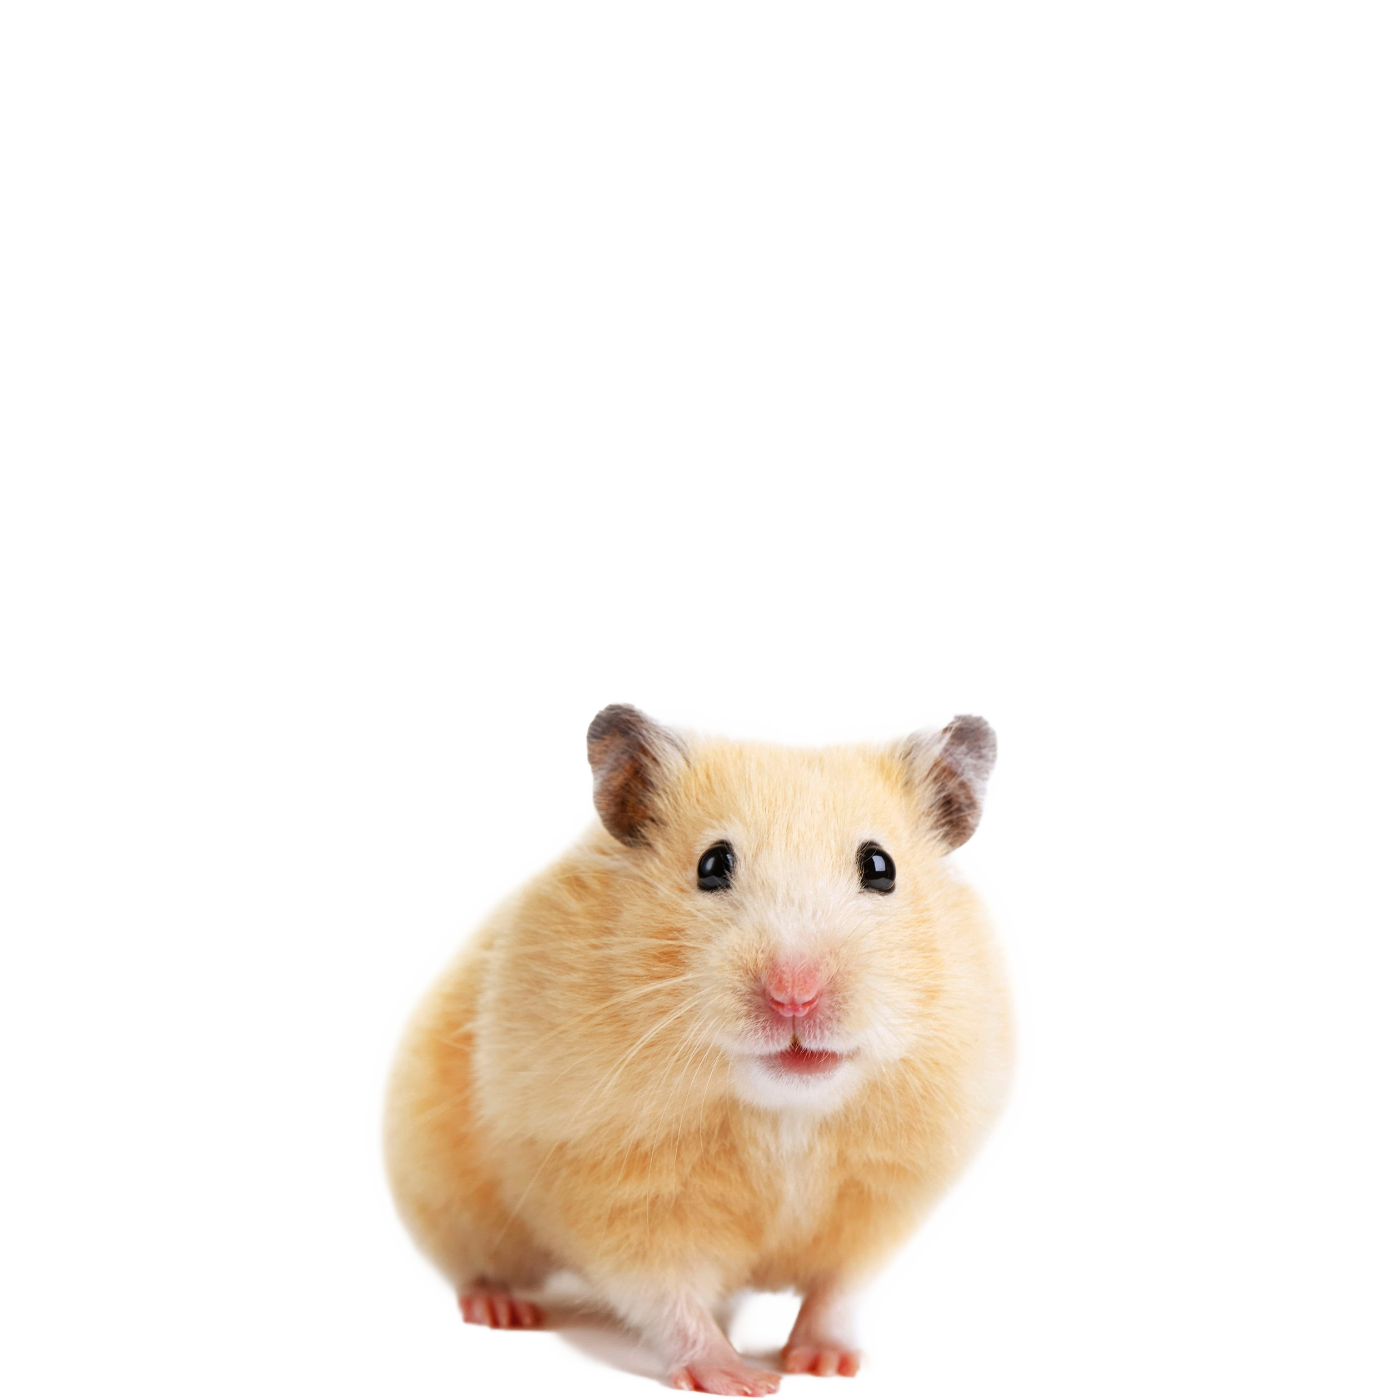 Hamster PNG Image File